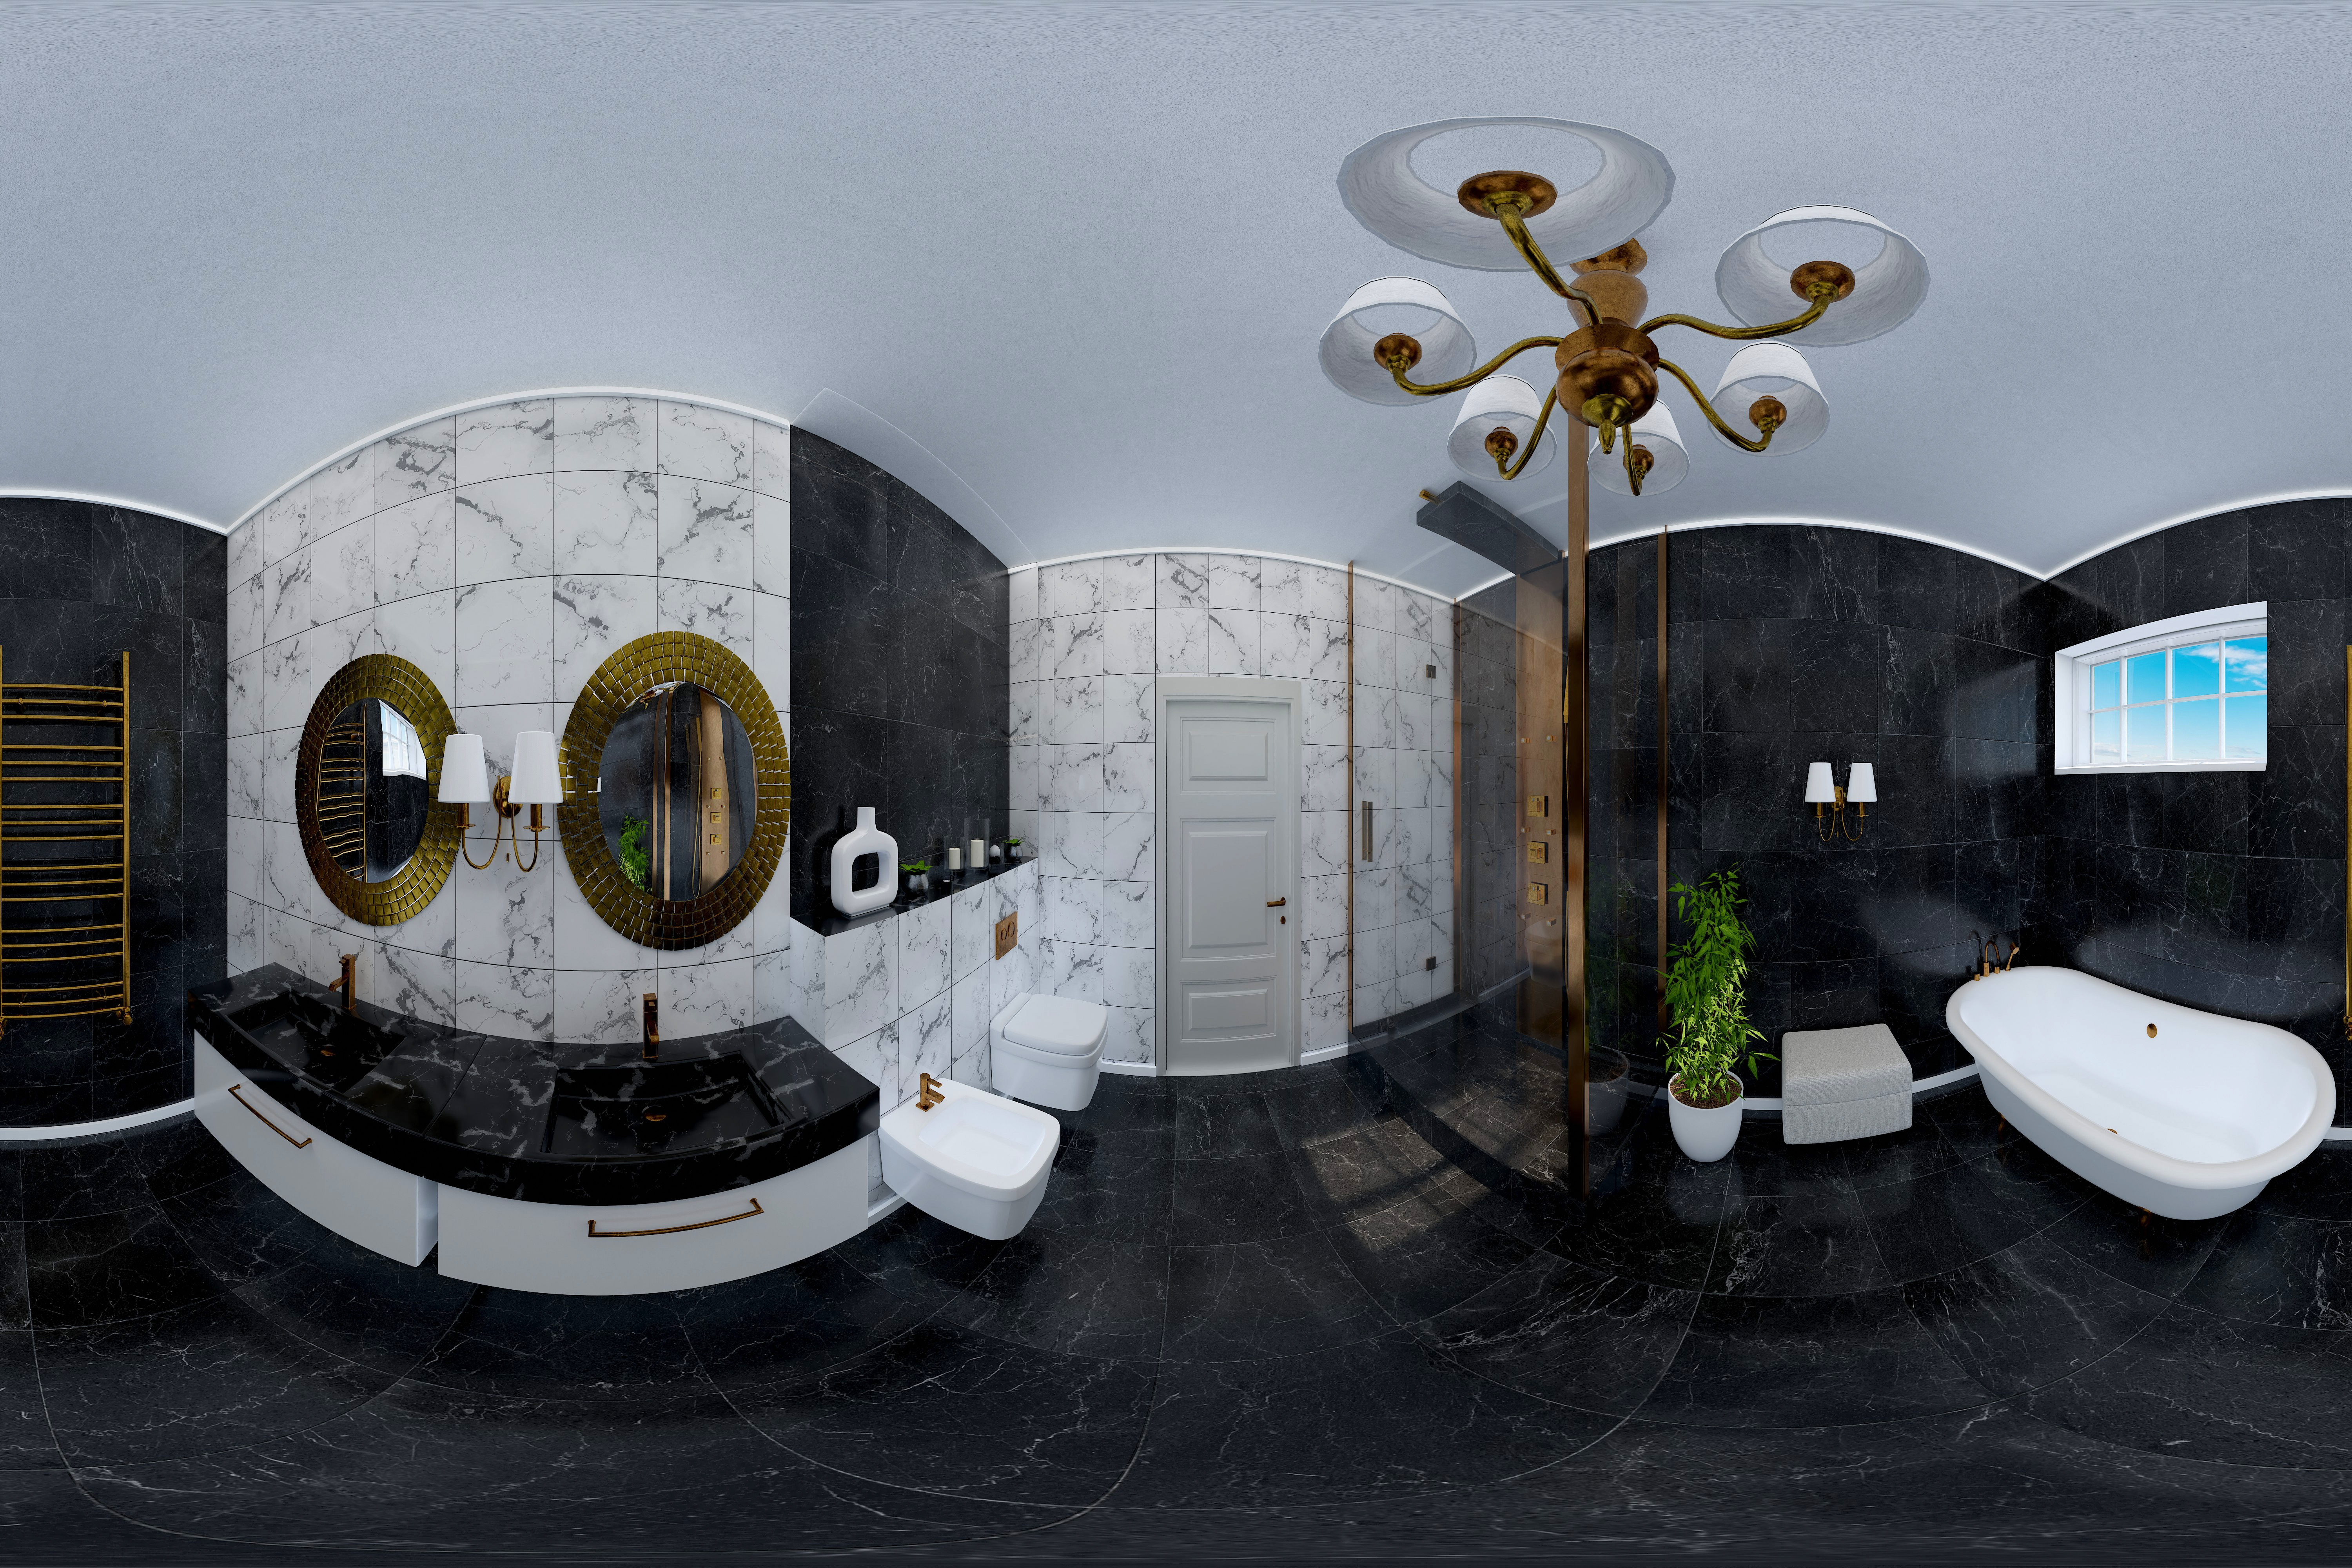 360 Interior Design 2019 Study Room I67 : Down3Dmodels